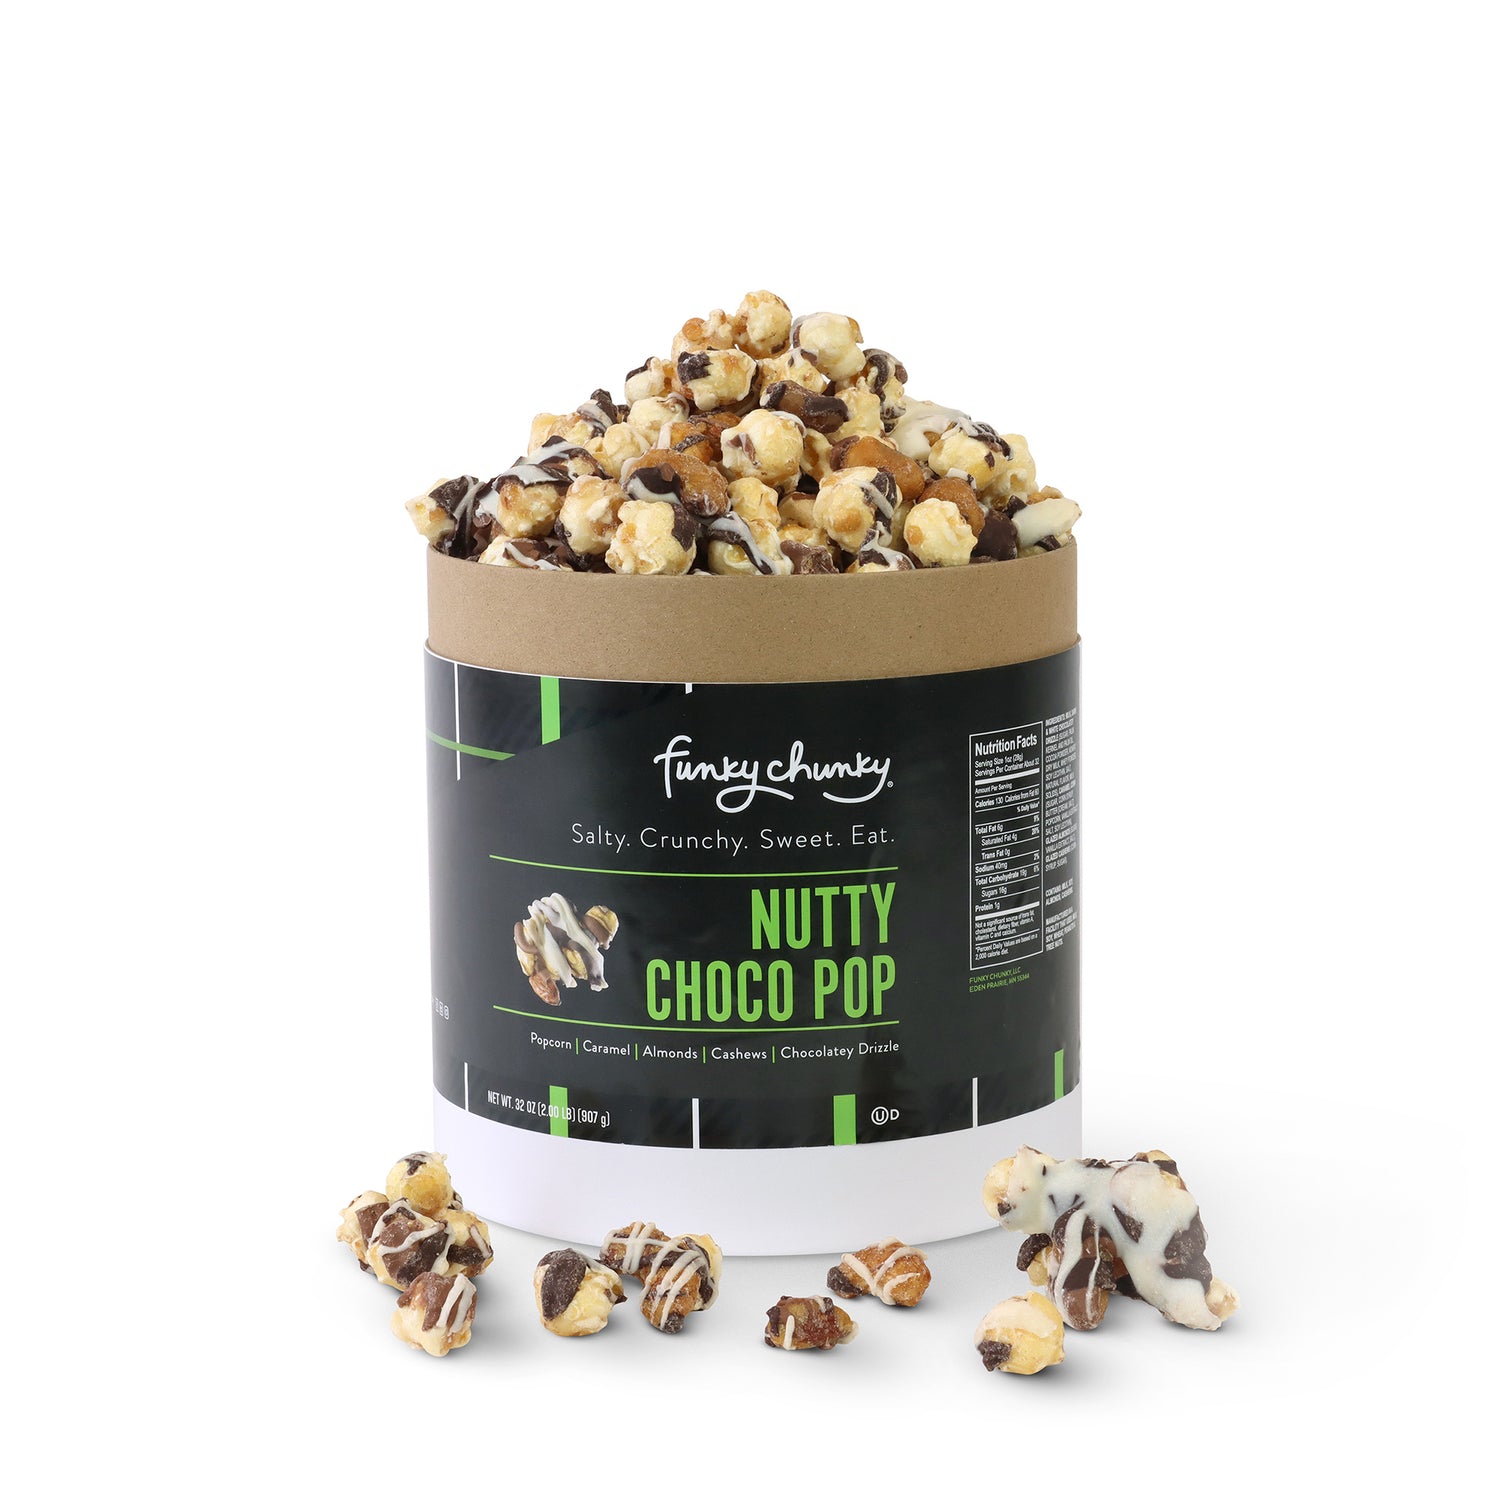 Nutty Choco Pop Gift Barrel (2lb.)